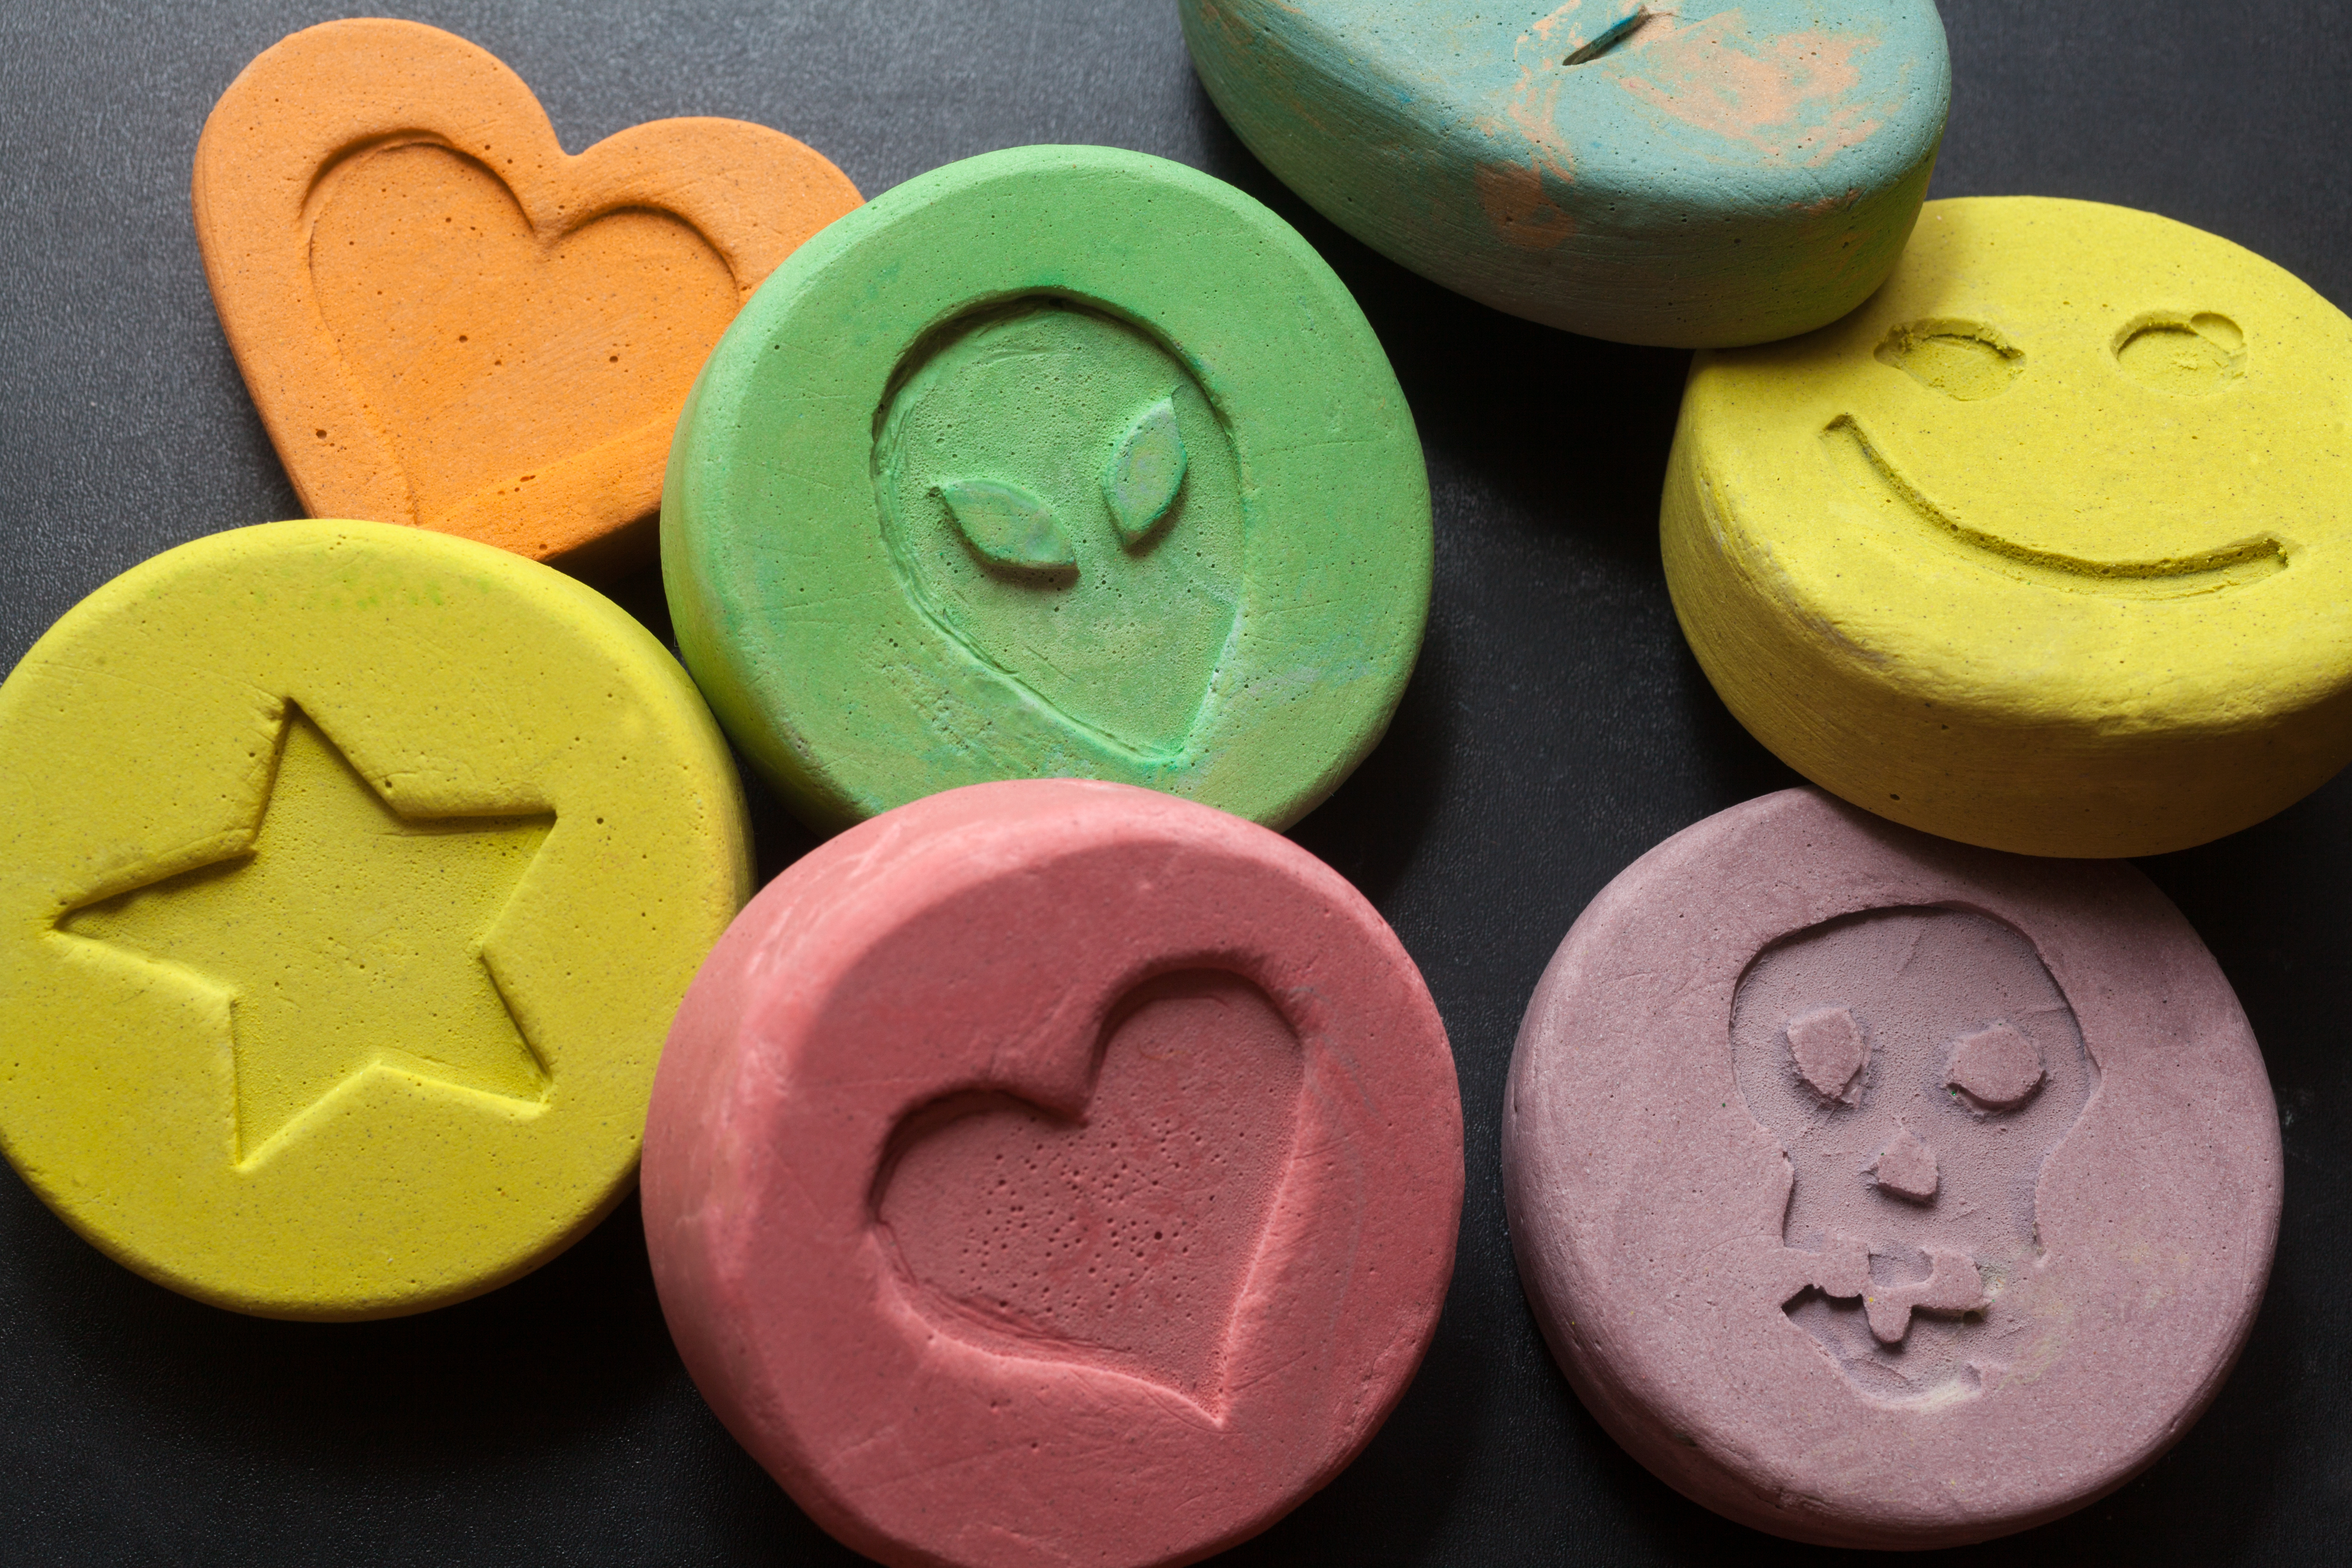 Frank Ecstacy / MDMA Factsheet